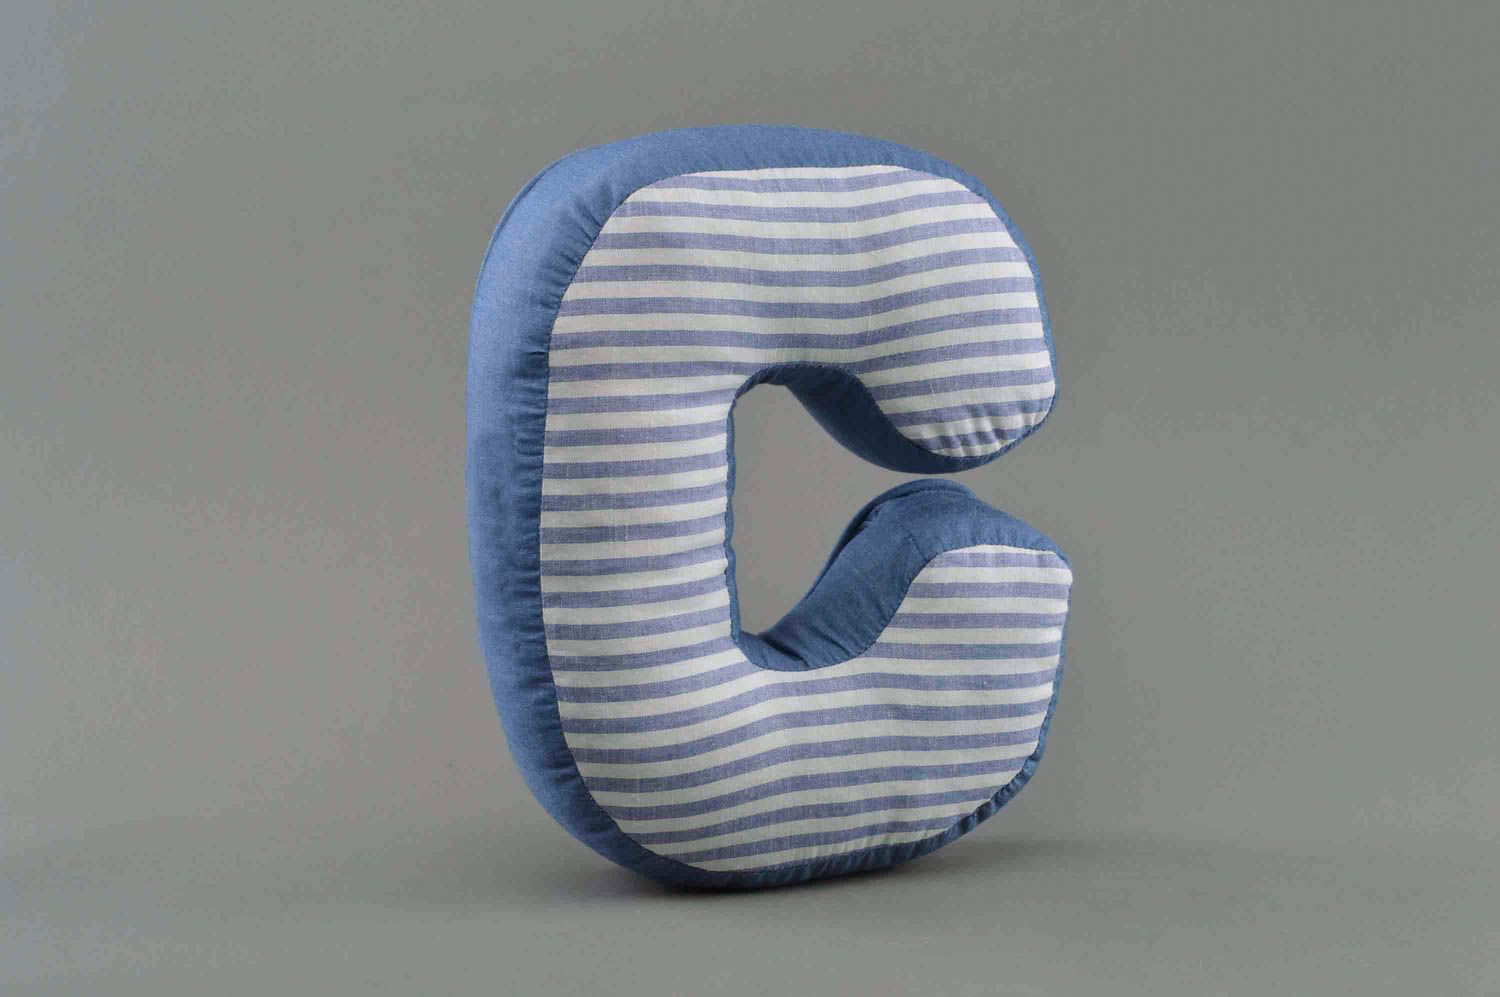 Декоративная буква-подушка С в полоску из синей натуральной ткани ручной работы фото 1